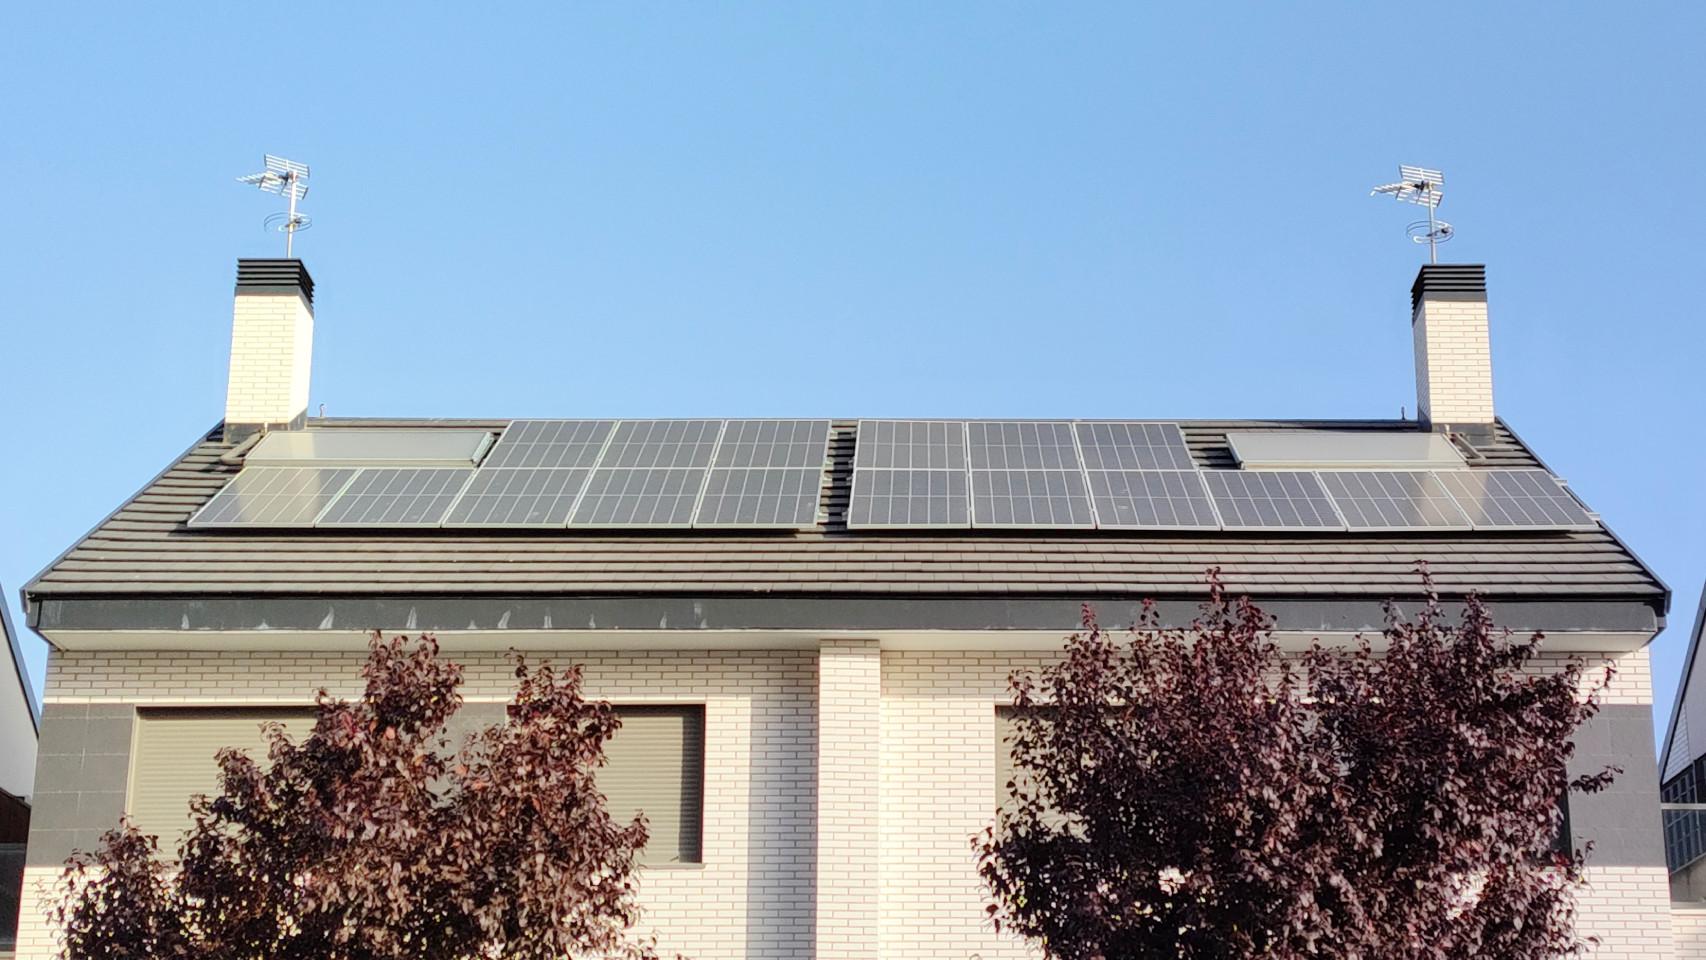 Placas solares instaladas en un tejado